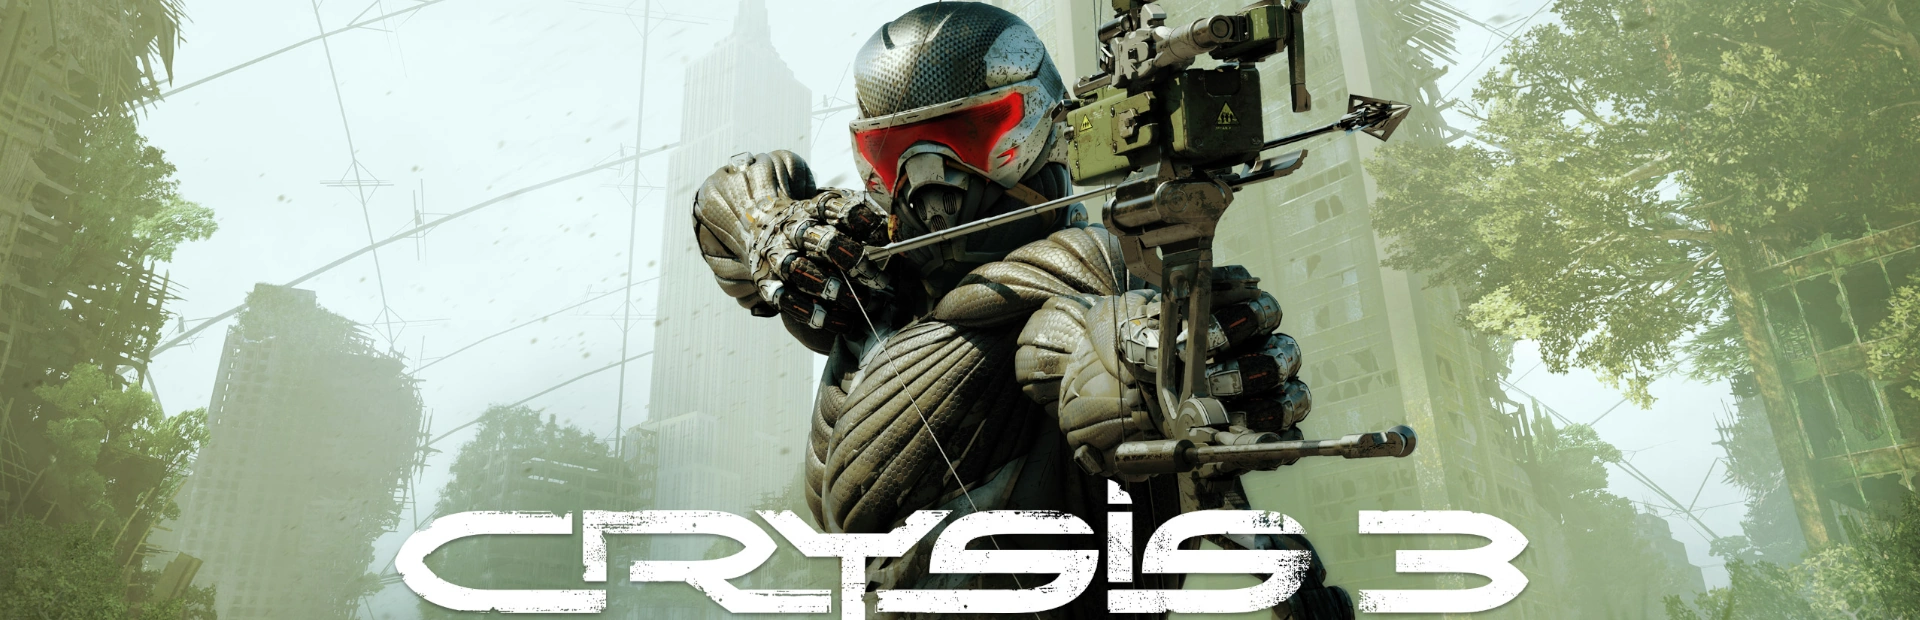 دانلود بازی Crysis 3 Remastered برای کامپیوتر | گیمباتو